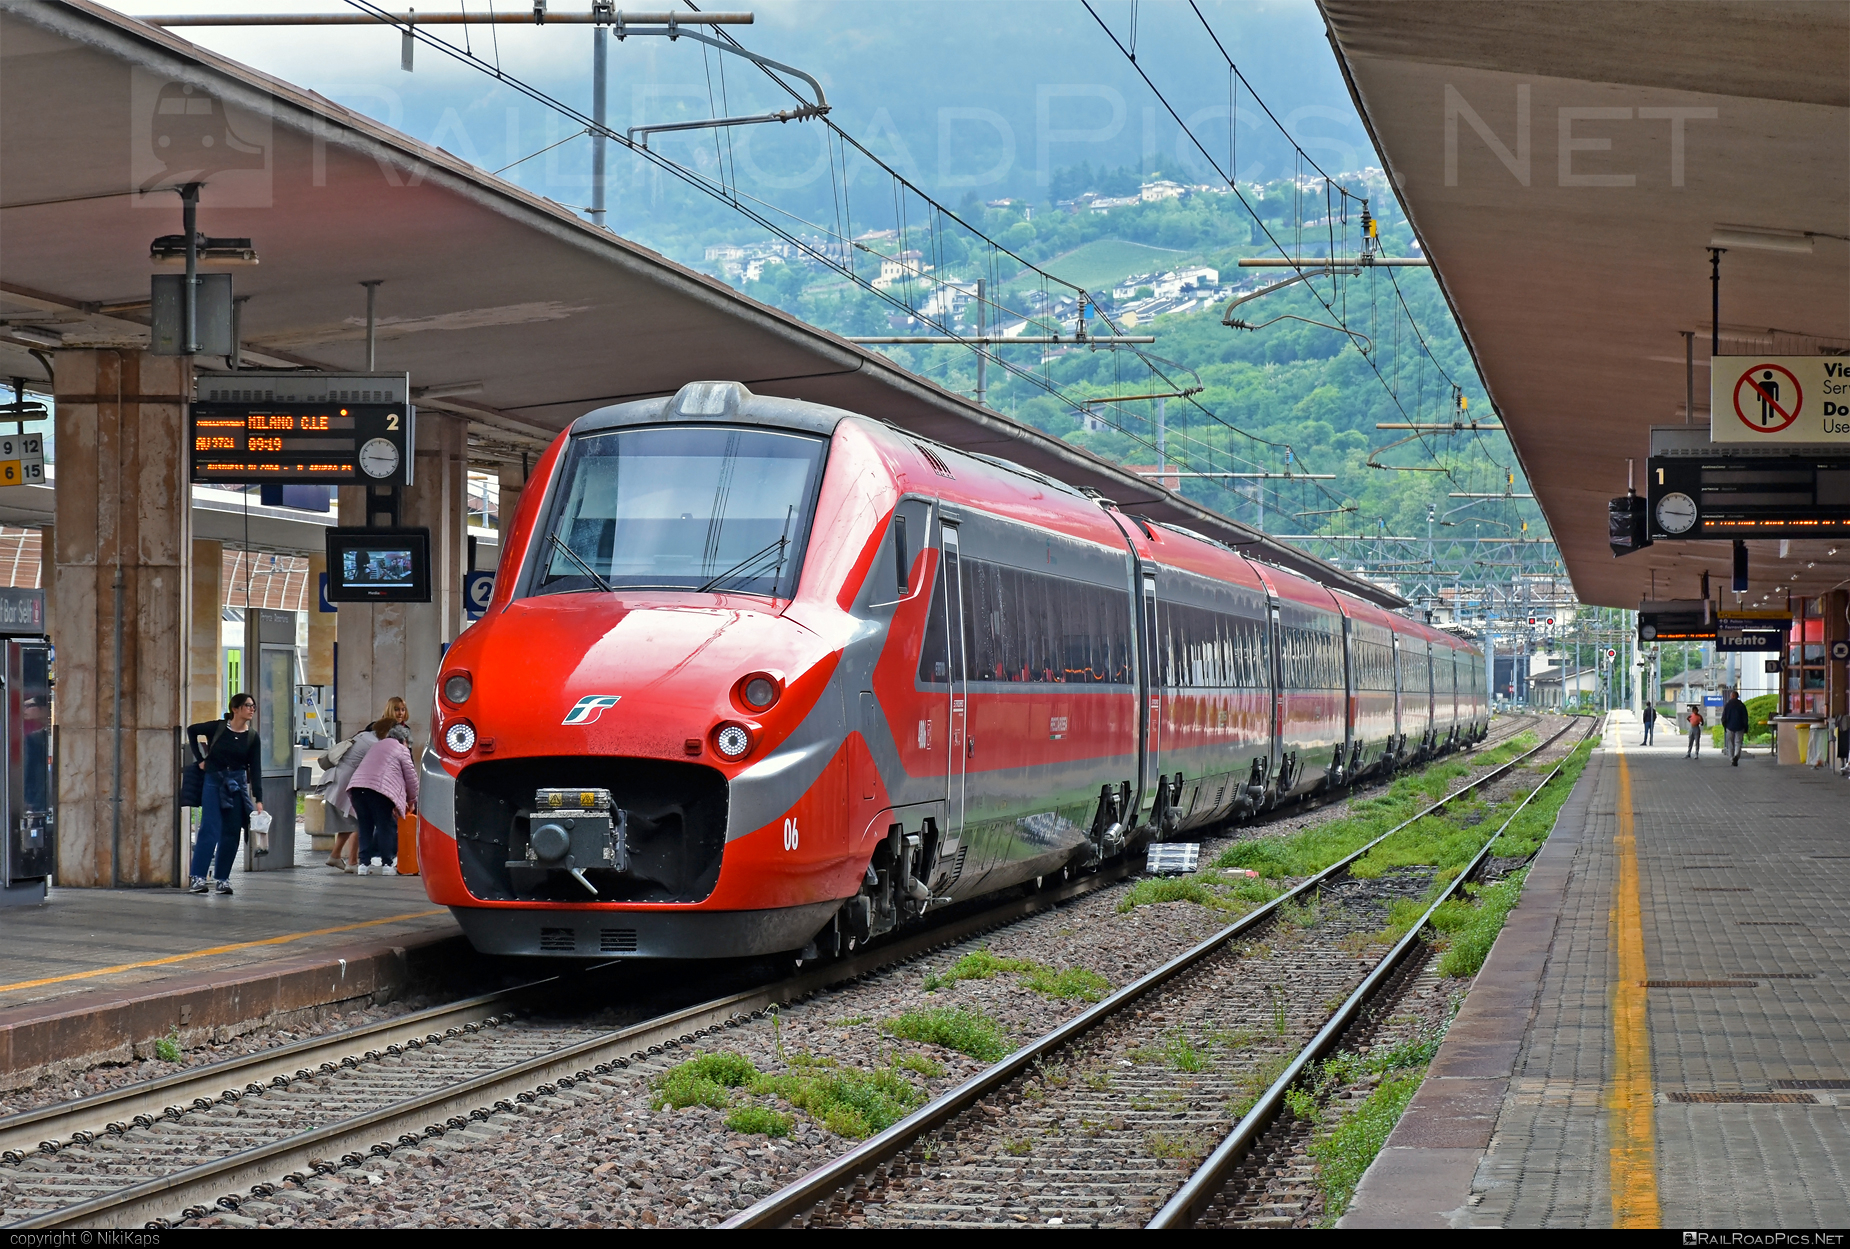 AnsaldoBreda ETR.700 - 4806 operated by Trenitalia S.p.A. #ansaldoBreda #ansaldoBredaEtr700 #etr700 #ferroviedellostato #frecciarossa #fs #fsitaliane #lefrecce #trenitalia #trenitaliaspa